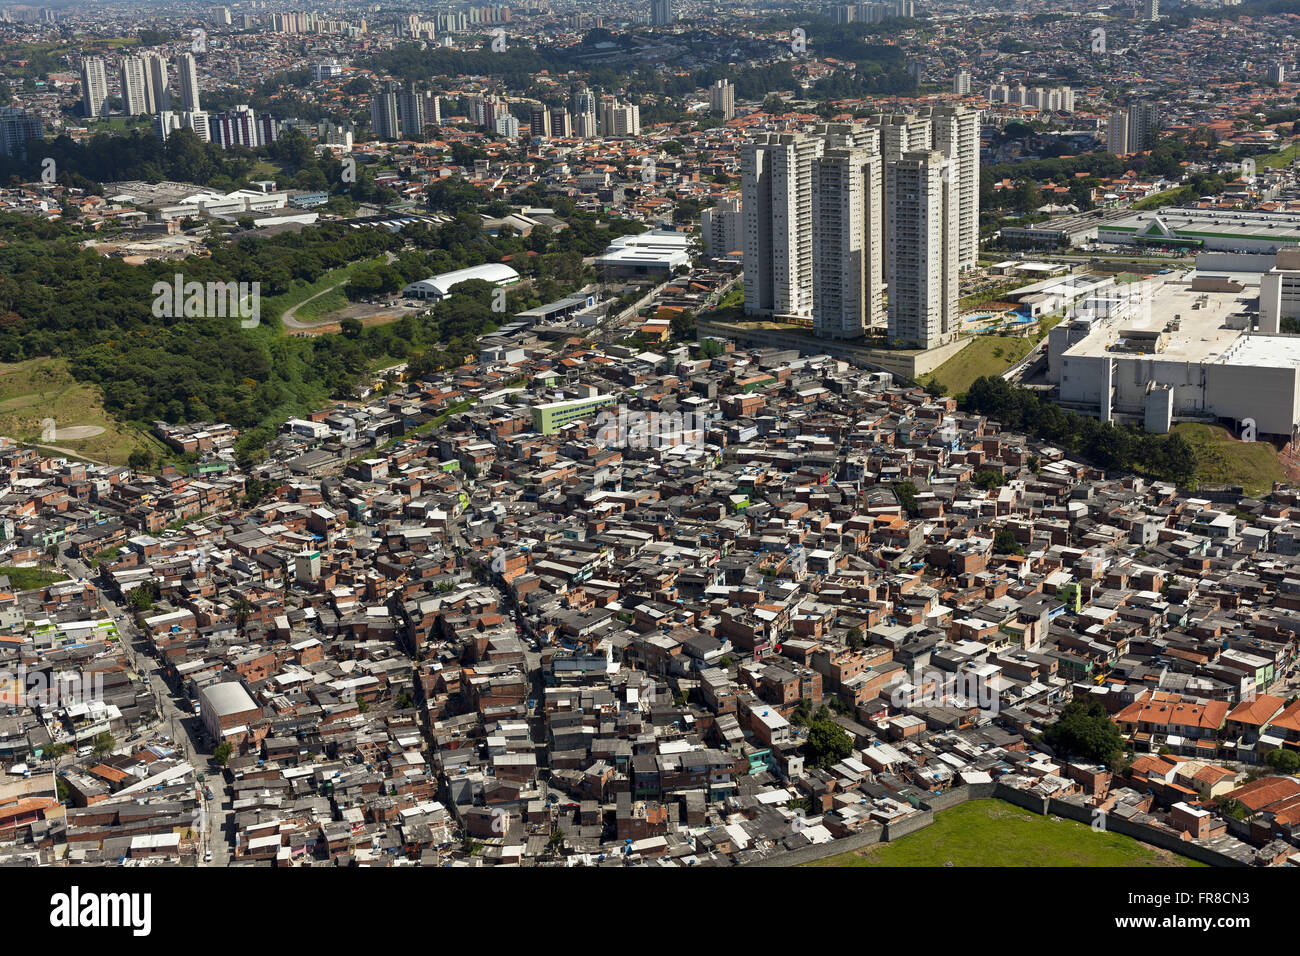 Vista aerea della favela Jardim Jaqueline e centro commerciale dell'autostrada Raposo Tavares destra Foto Stock